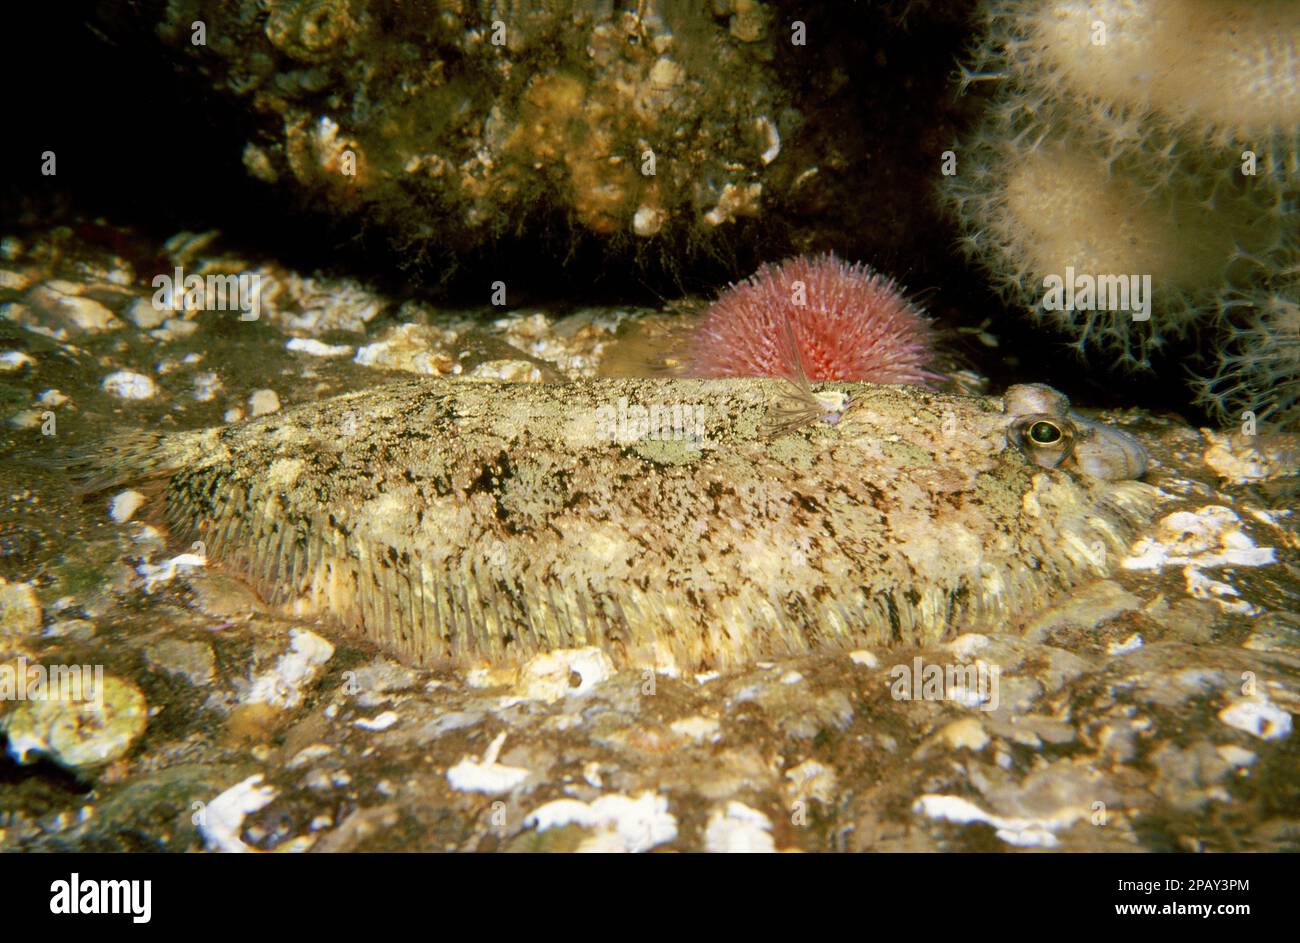 Topknot (Zeugopterus punctatus) lying on a rocky surface, UK. Stock Photo